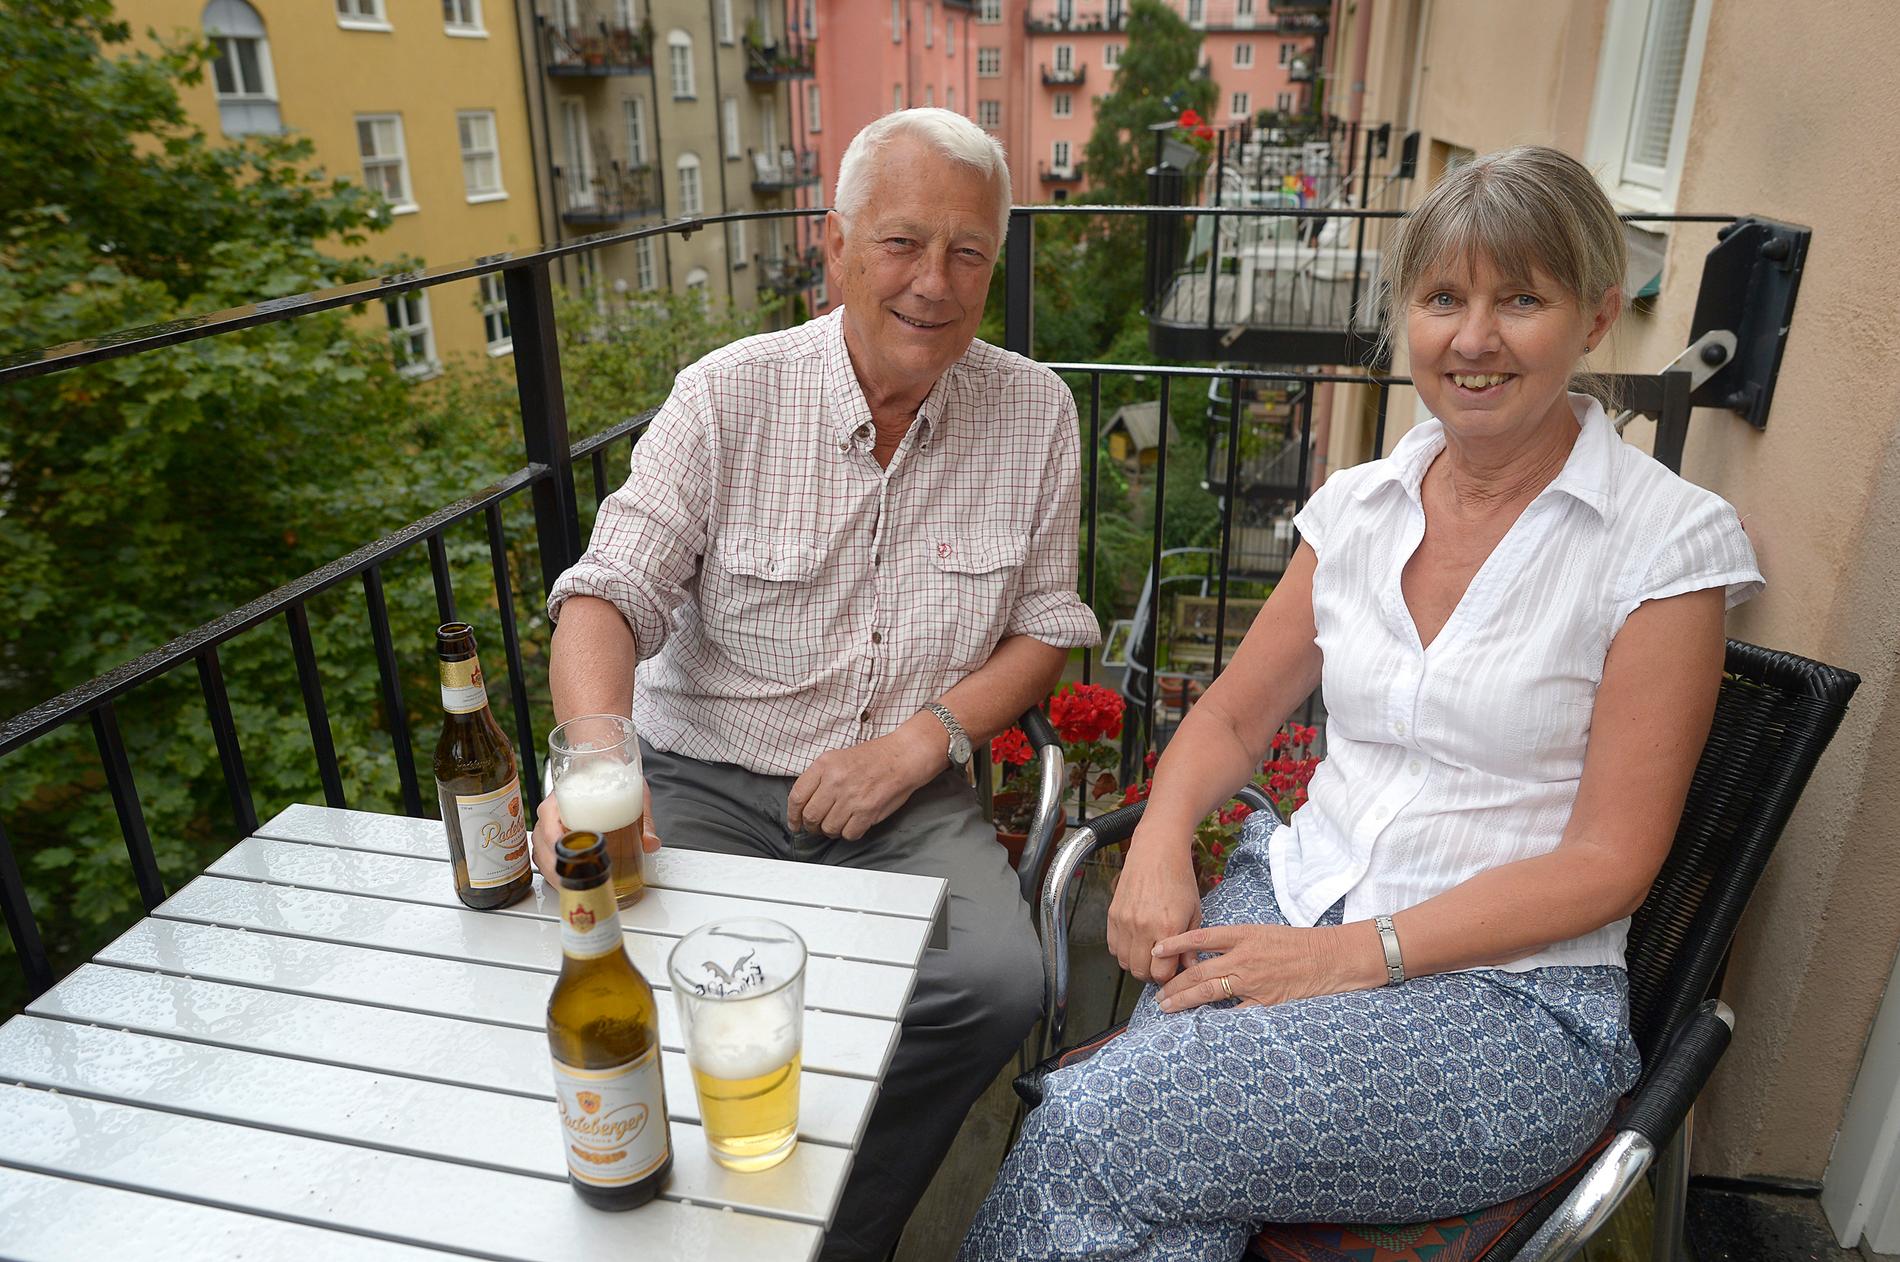 Firar på balkongen  Pensionären Hasse Hagberg och hustrun Ing-Britt Östberg tar varsin öl på balkongen. Nästa år väntar tillskott i hushållskassan.